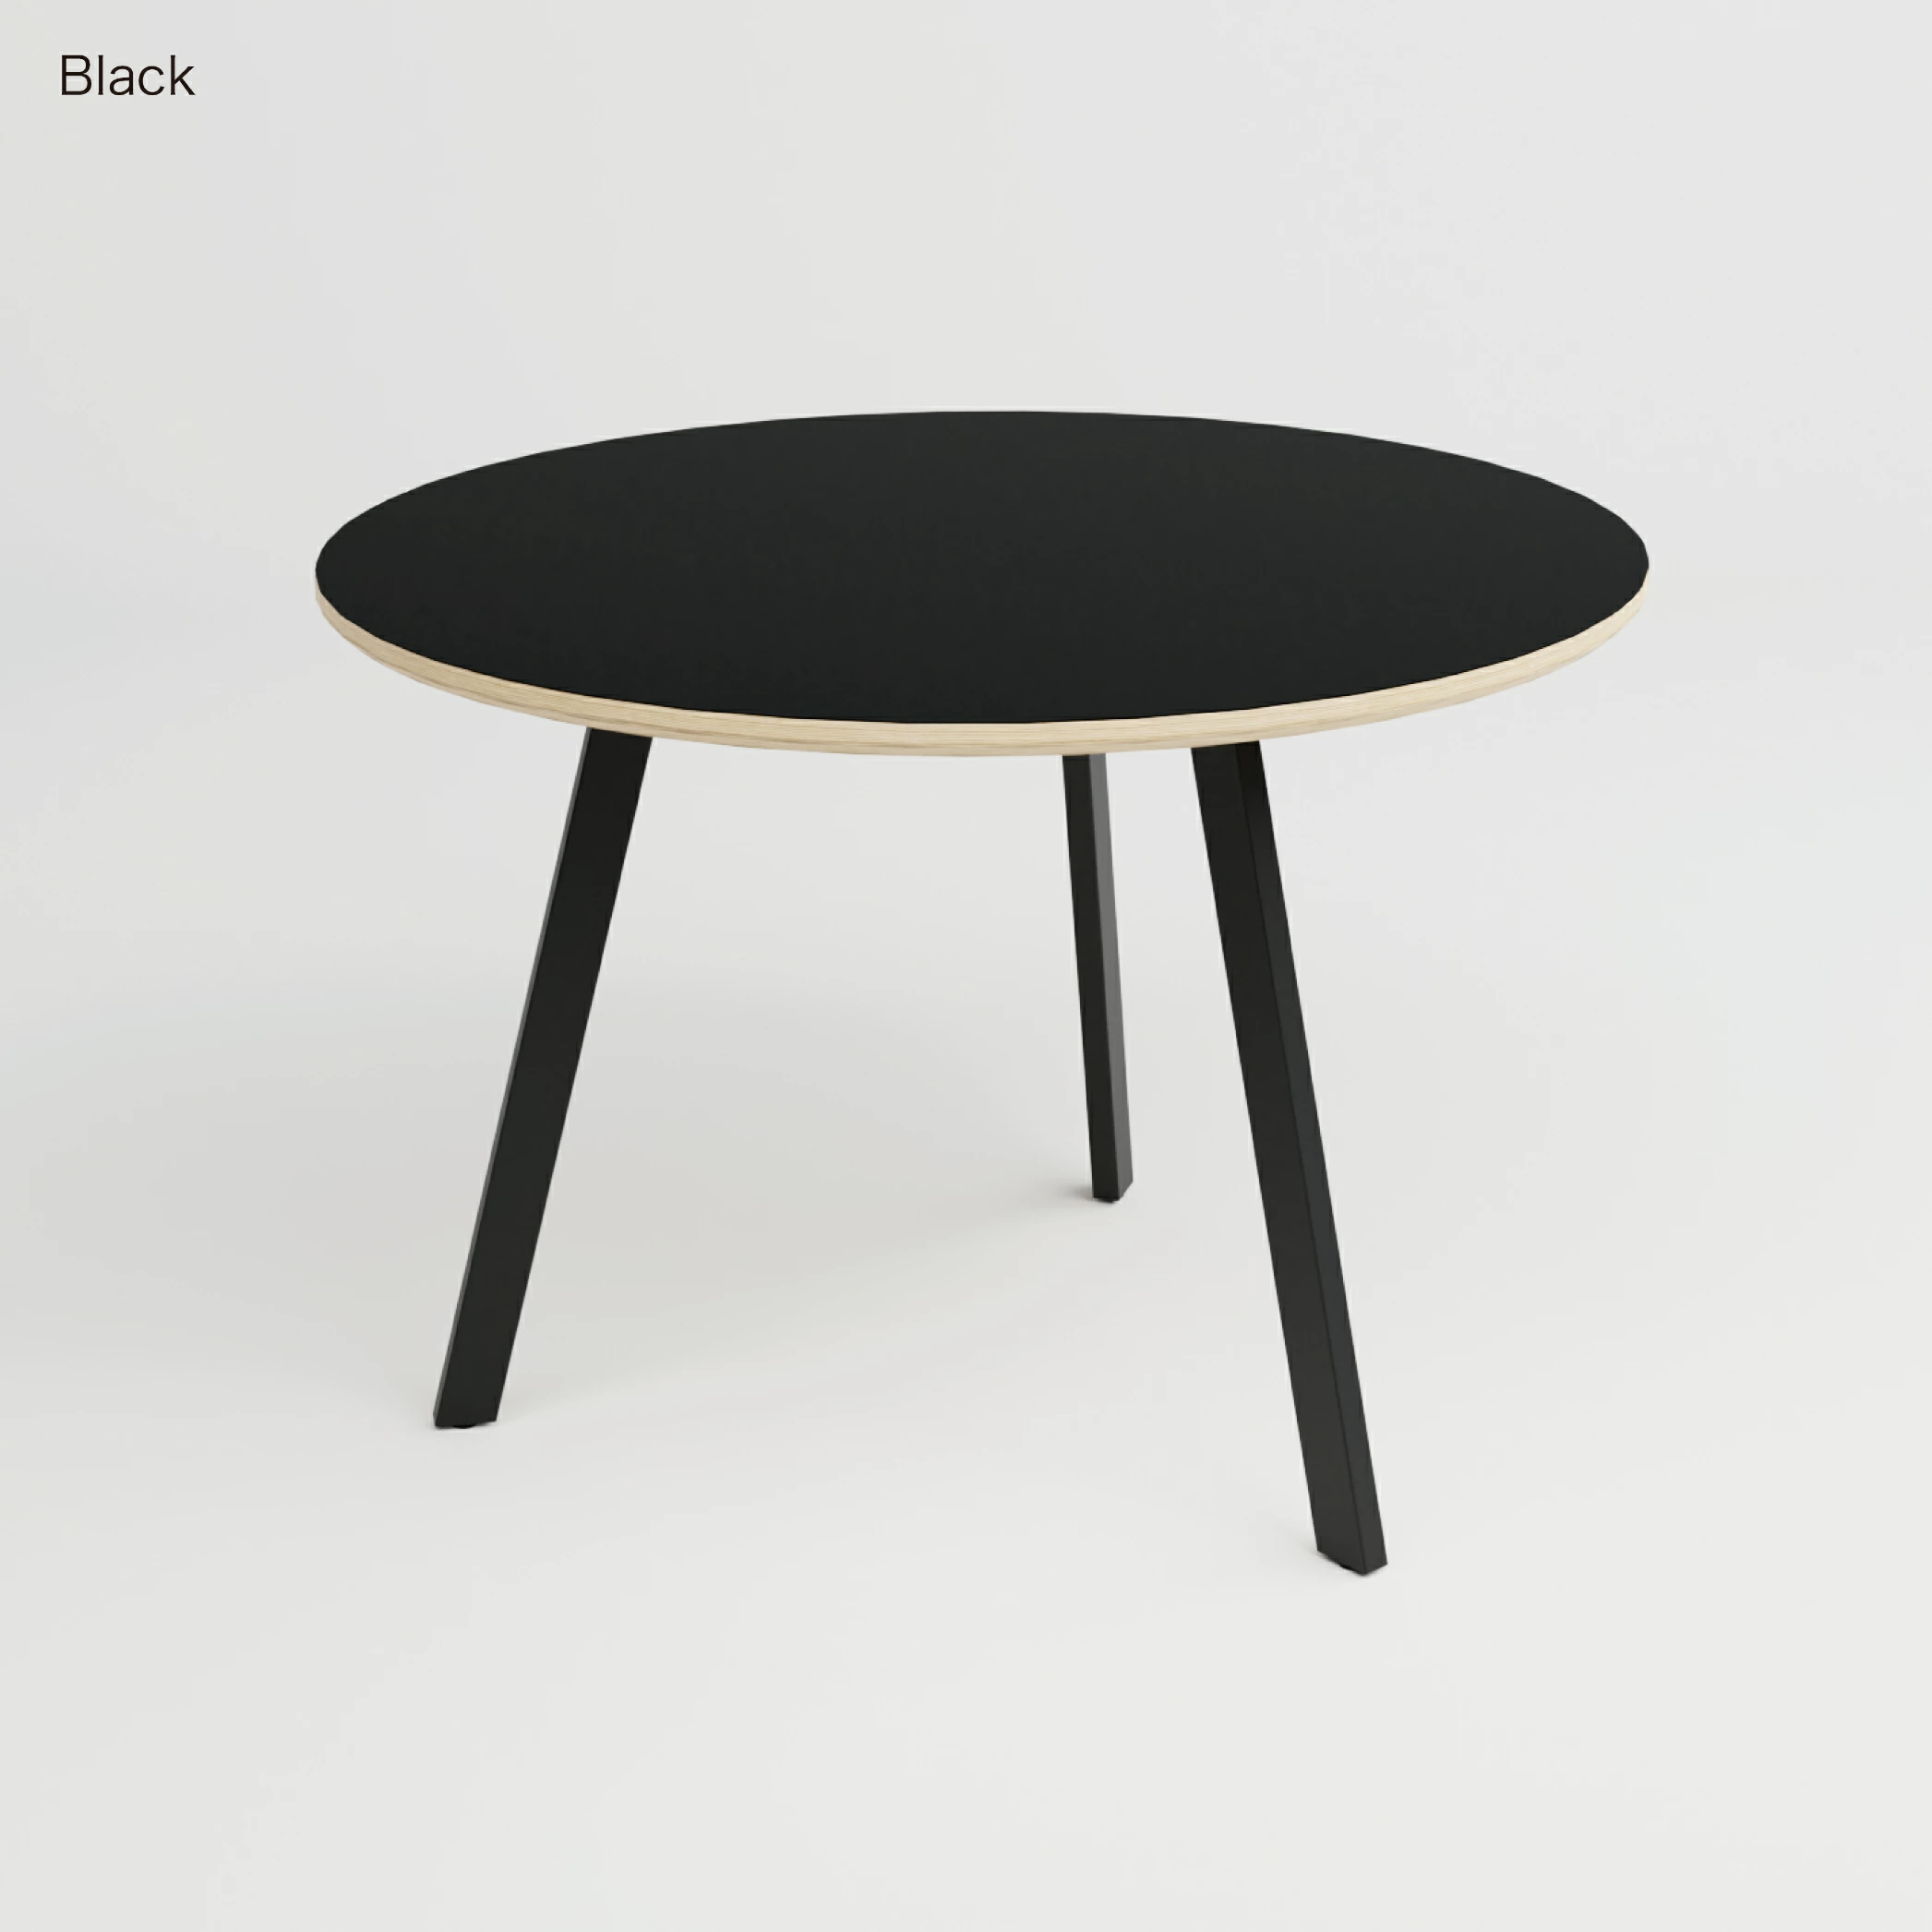 サイズオーダー無料 丸テーブル ラウンドテーブル ダイニングテーブル 丸 円卓 白 黒 ホワイト ブラック グレー 円形 おしゃれ 横幅 60/70/80/90/100/110/120cm テーブル 円テーブル 北欧 ダイニングテーブルのTOMOSU